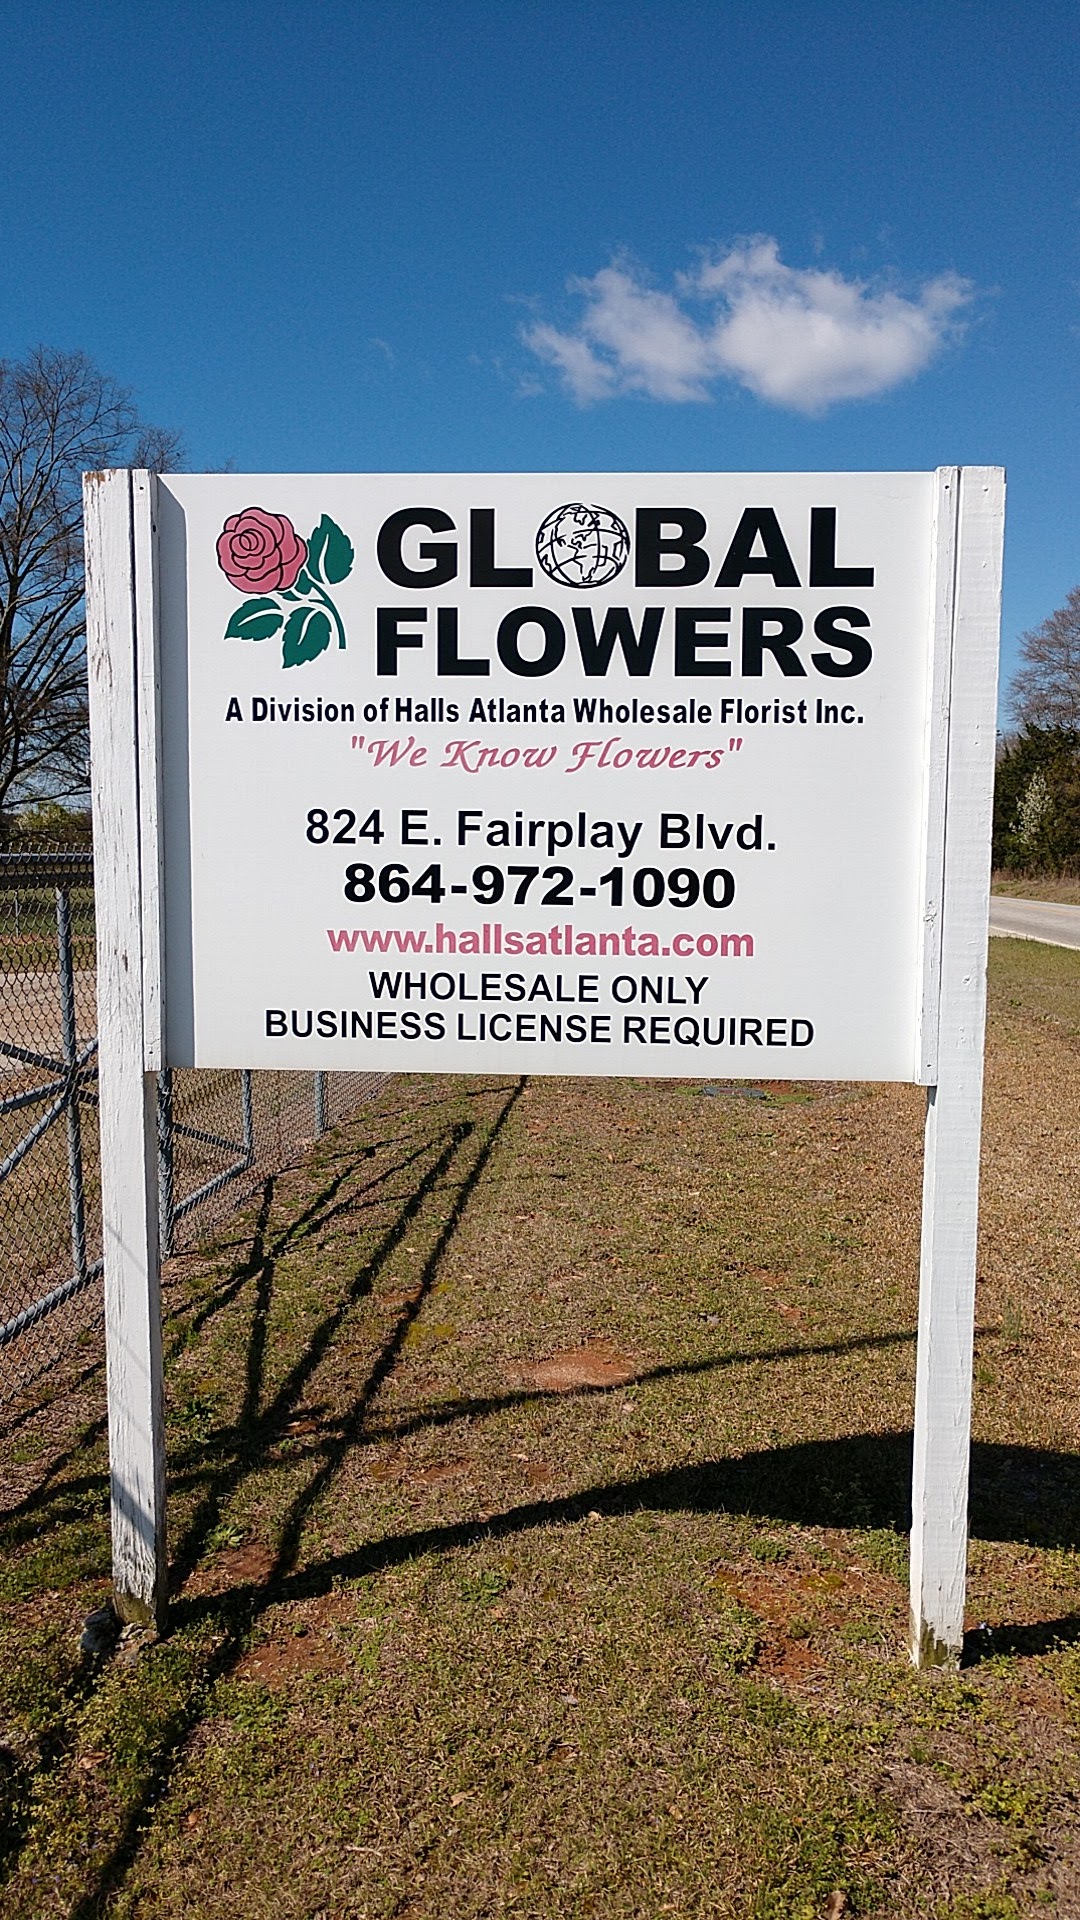 Global Flowers 824 E Fairplay Blvd, Fair Play South Carolina 29643